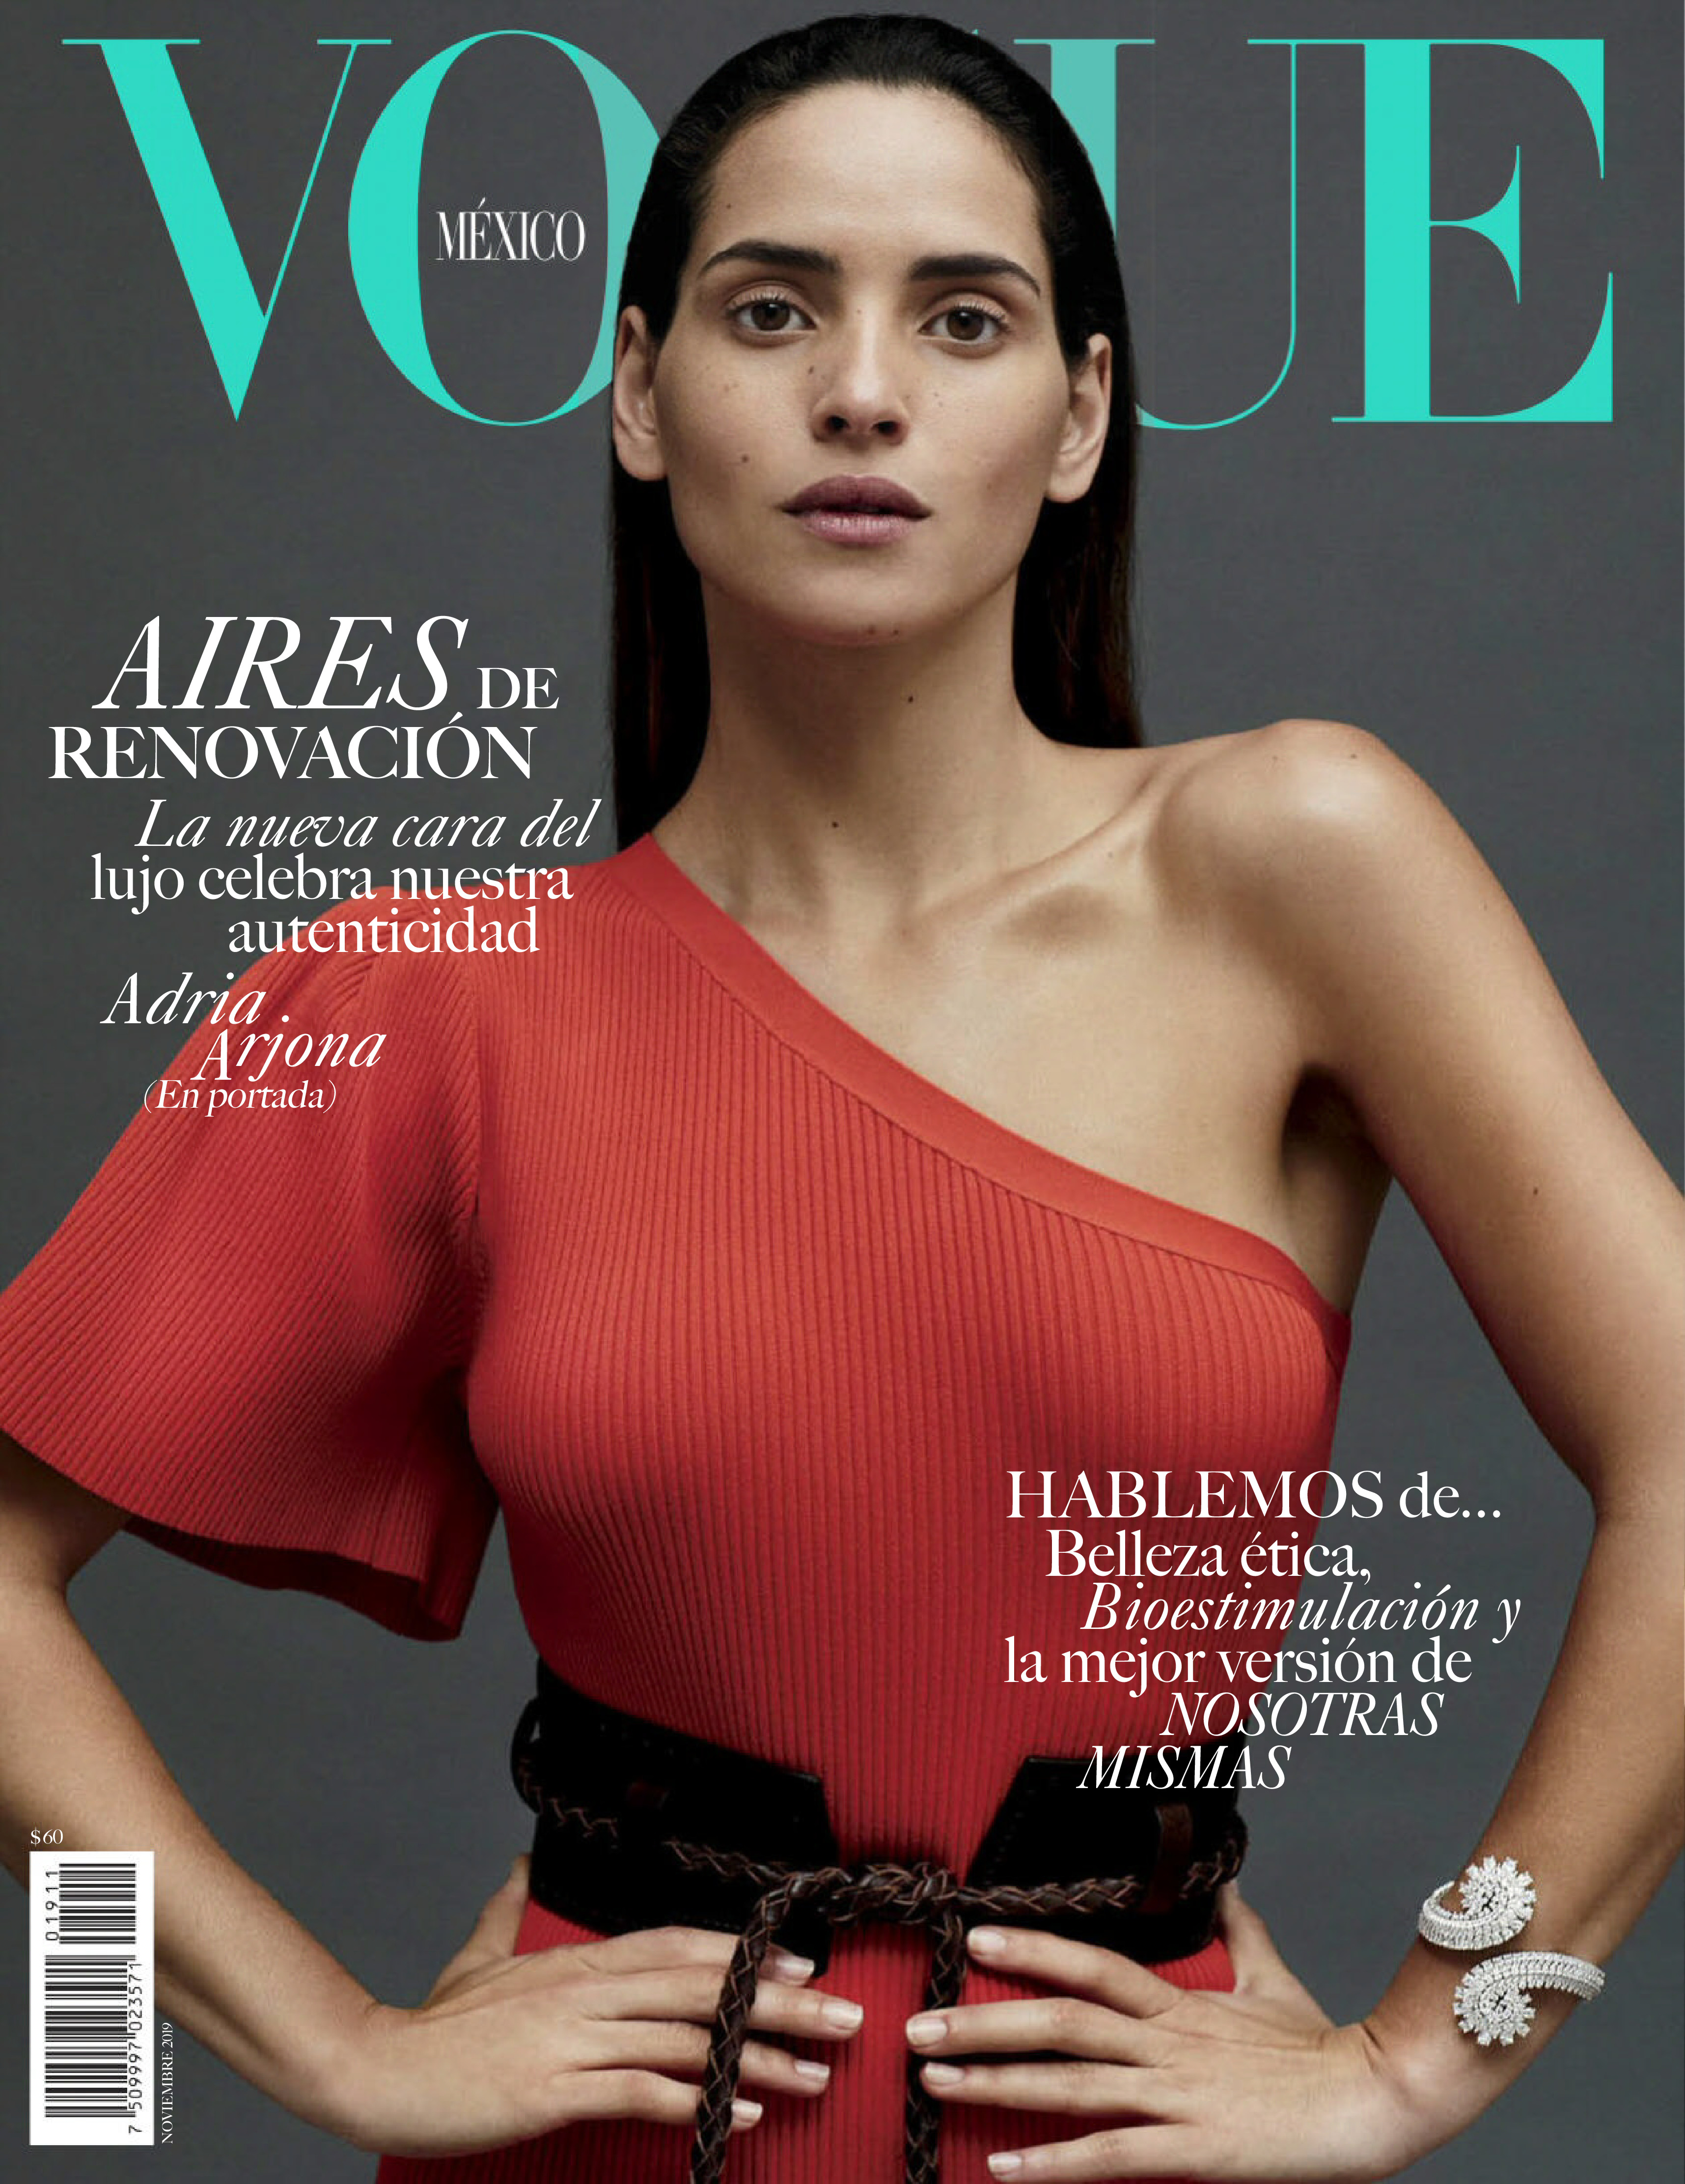 Vogue Mexico November 2019 Cover Story Editorial